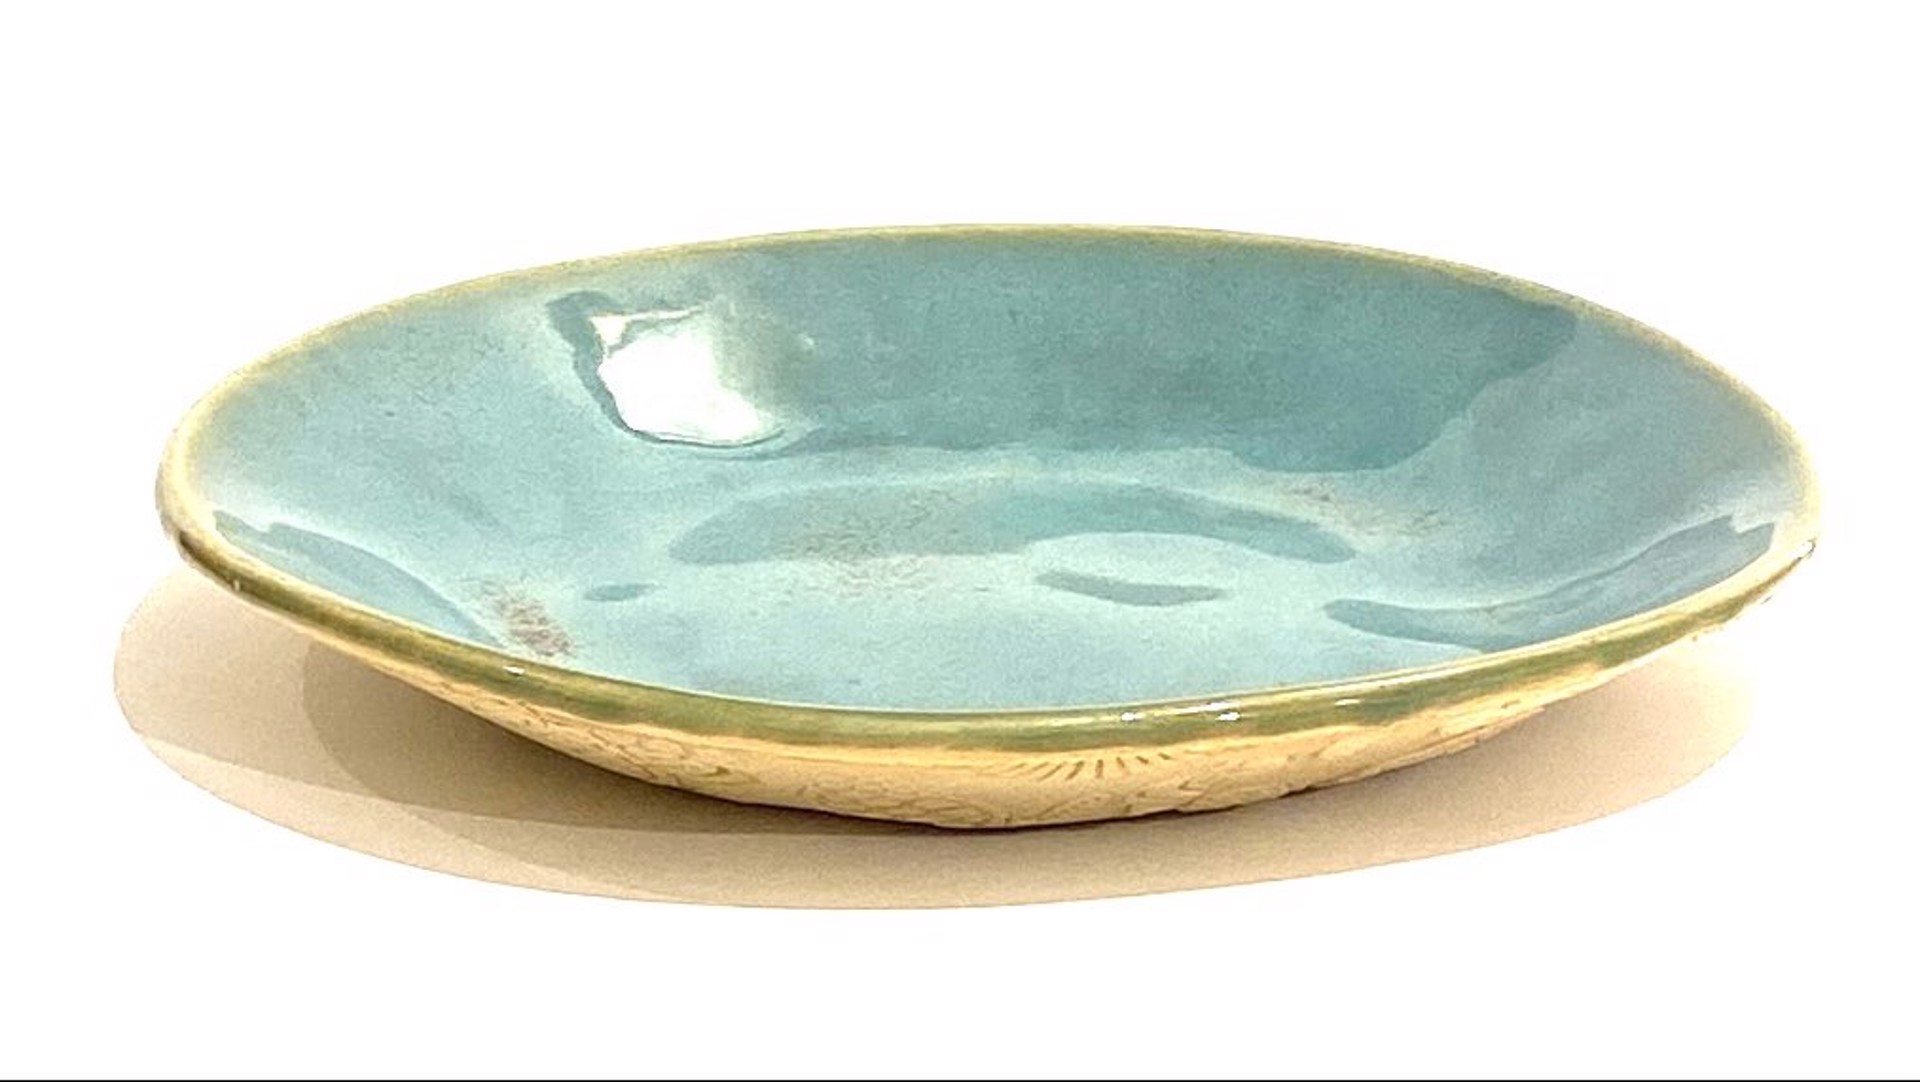 Plate, Teal Glazed Turtle Embossed Underside by Barbara Bergwerf, Ceramics